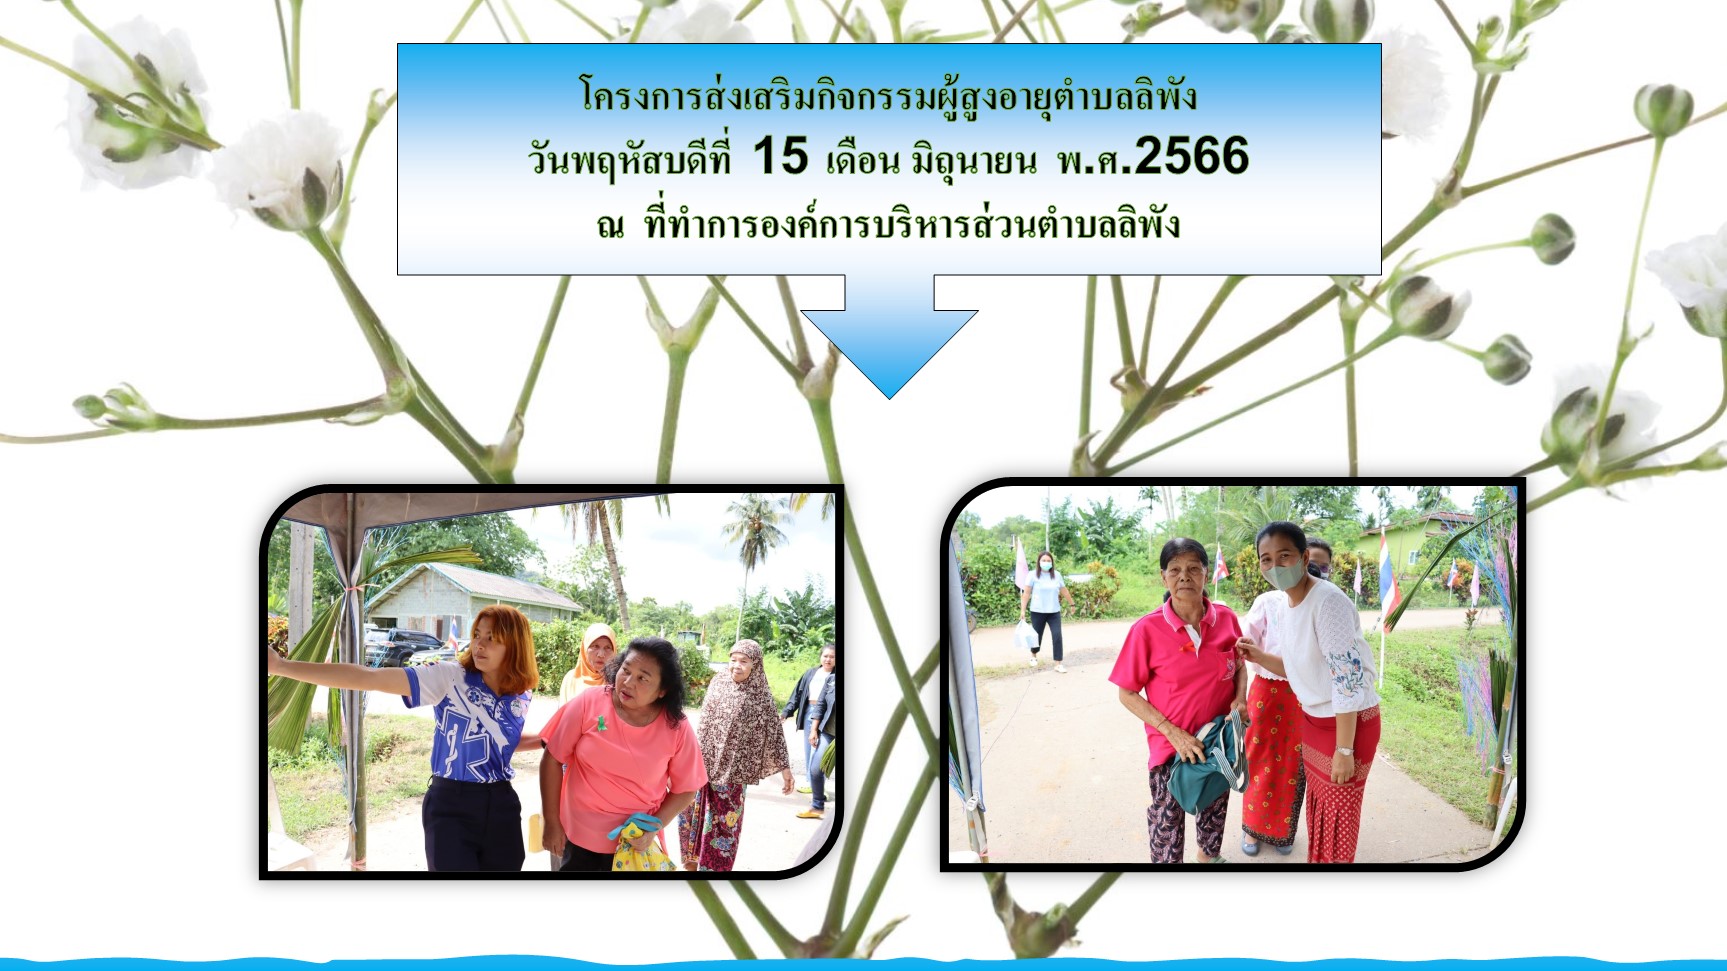 โครงการส่งเสริมกิจกรรมผู้สูงอายุตำบลลิพัง วันพฤหัสบดีที่ 15 มิถุนายน 2566 ณ ที่ทำการองค์การบริหารส่วนตำบลลิพัง